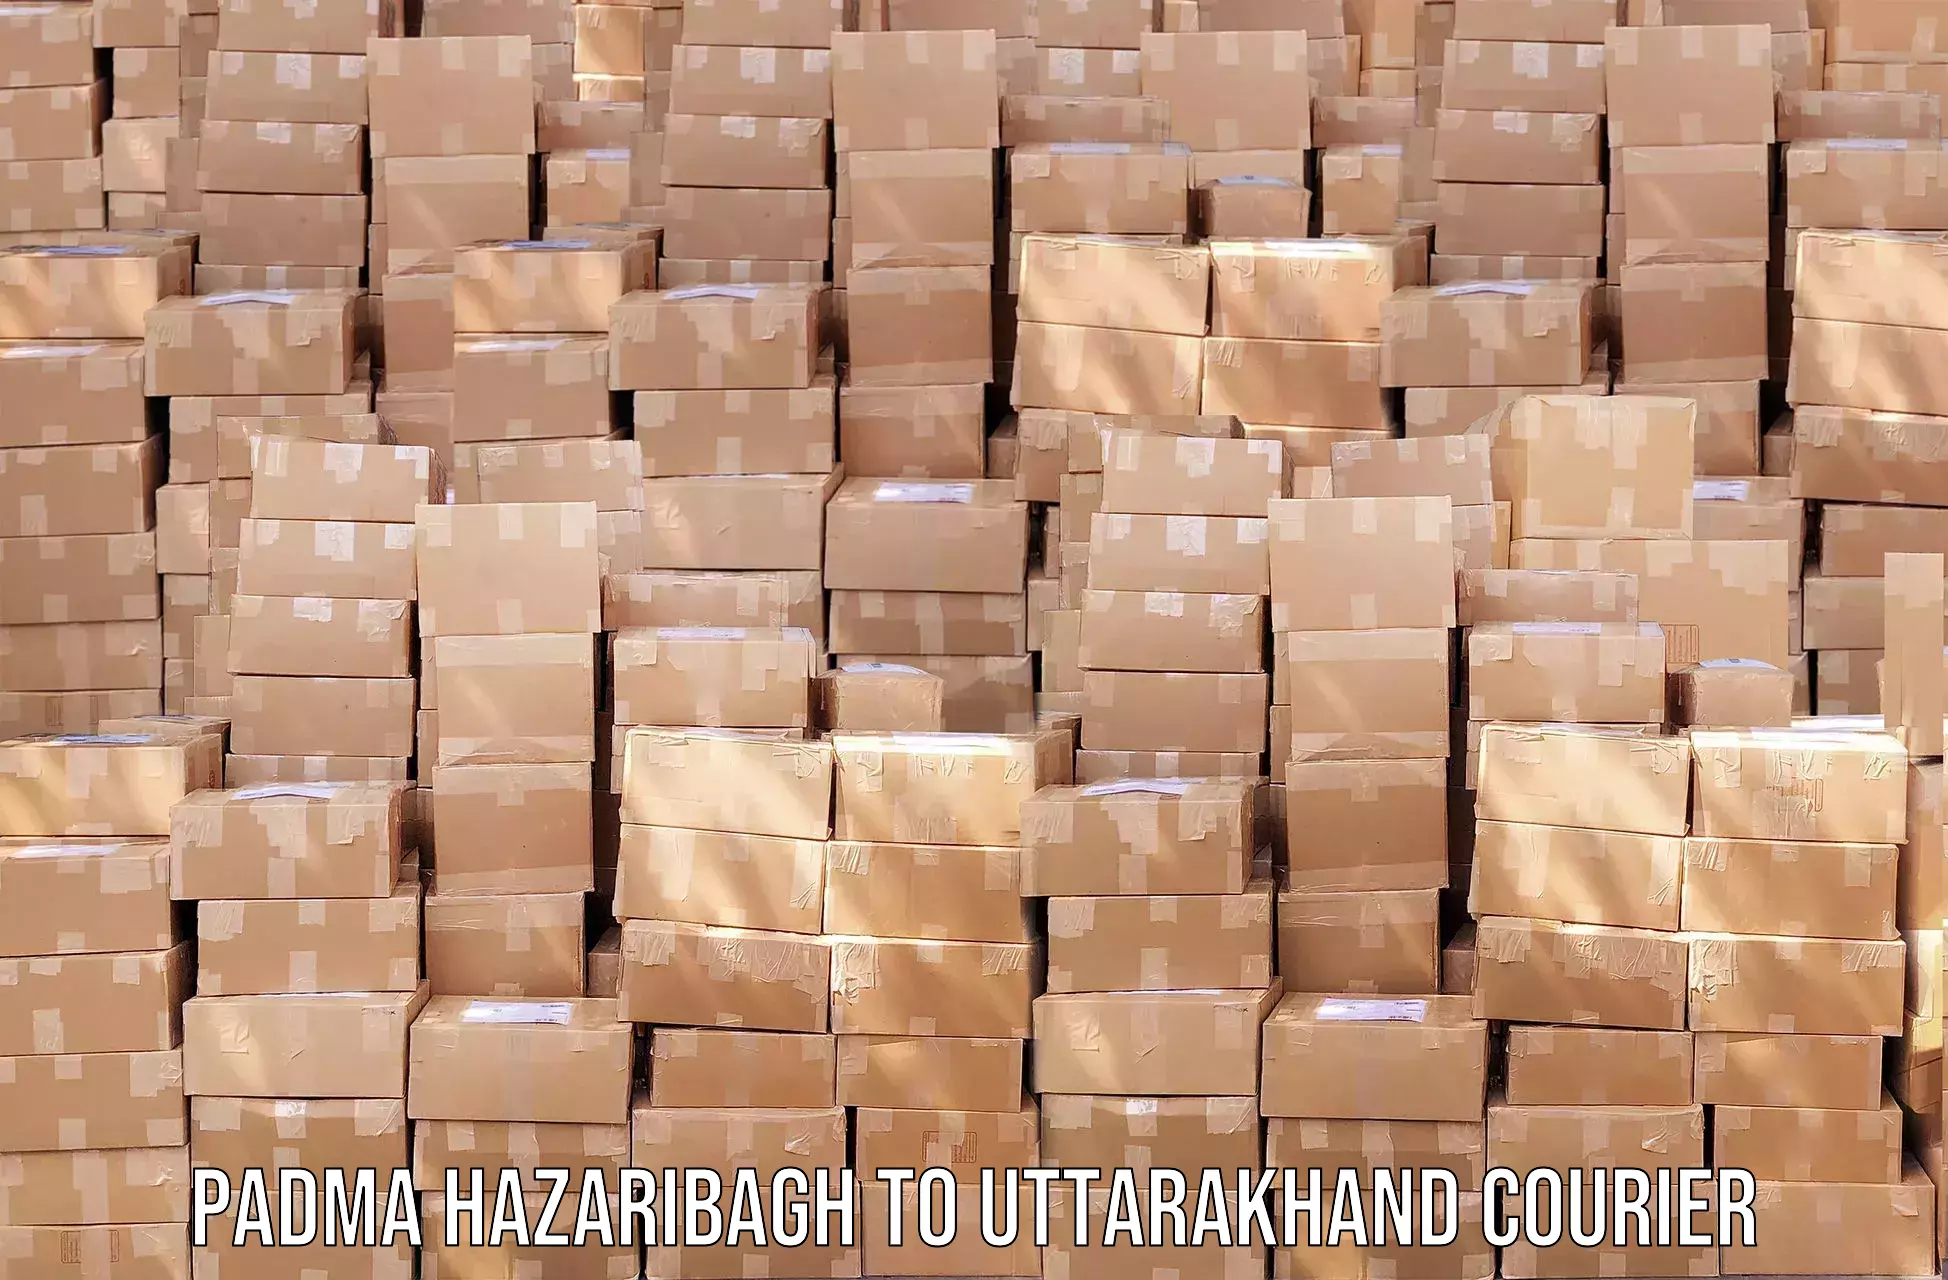 Efficient shipping platforms in Padma Hazaribagh to Pithoragarh